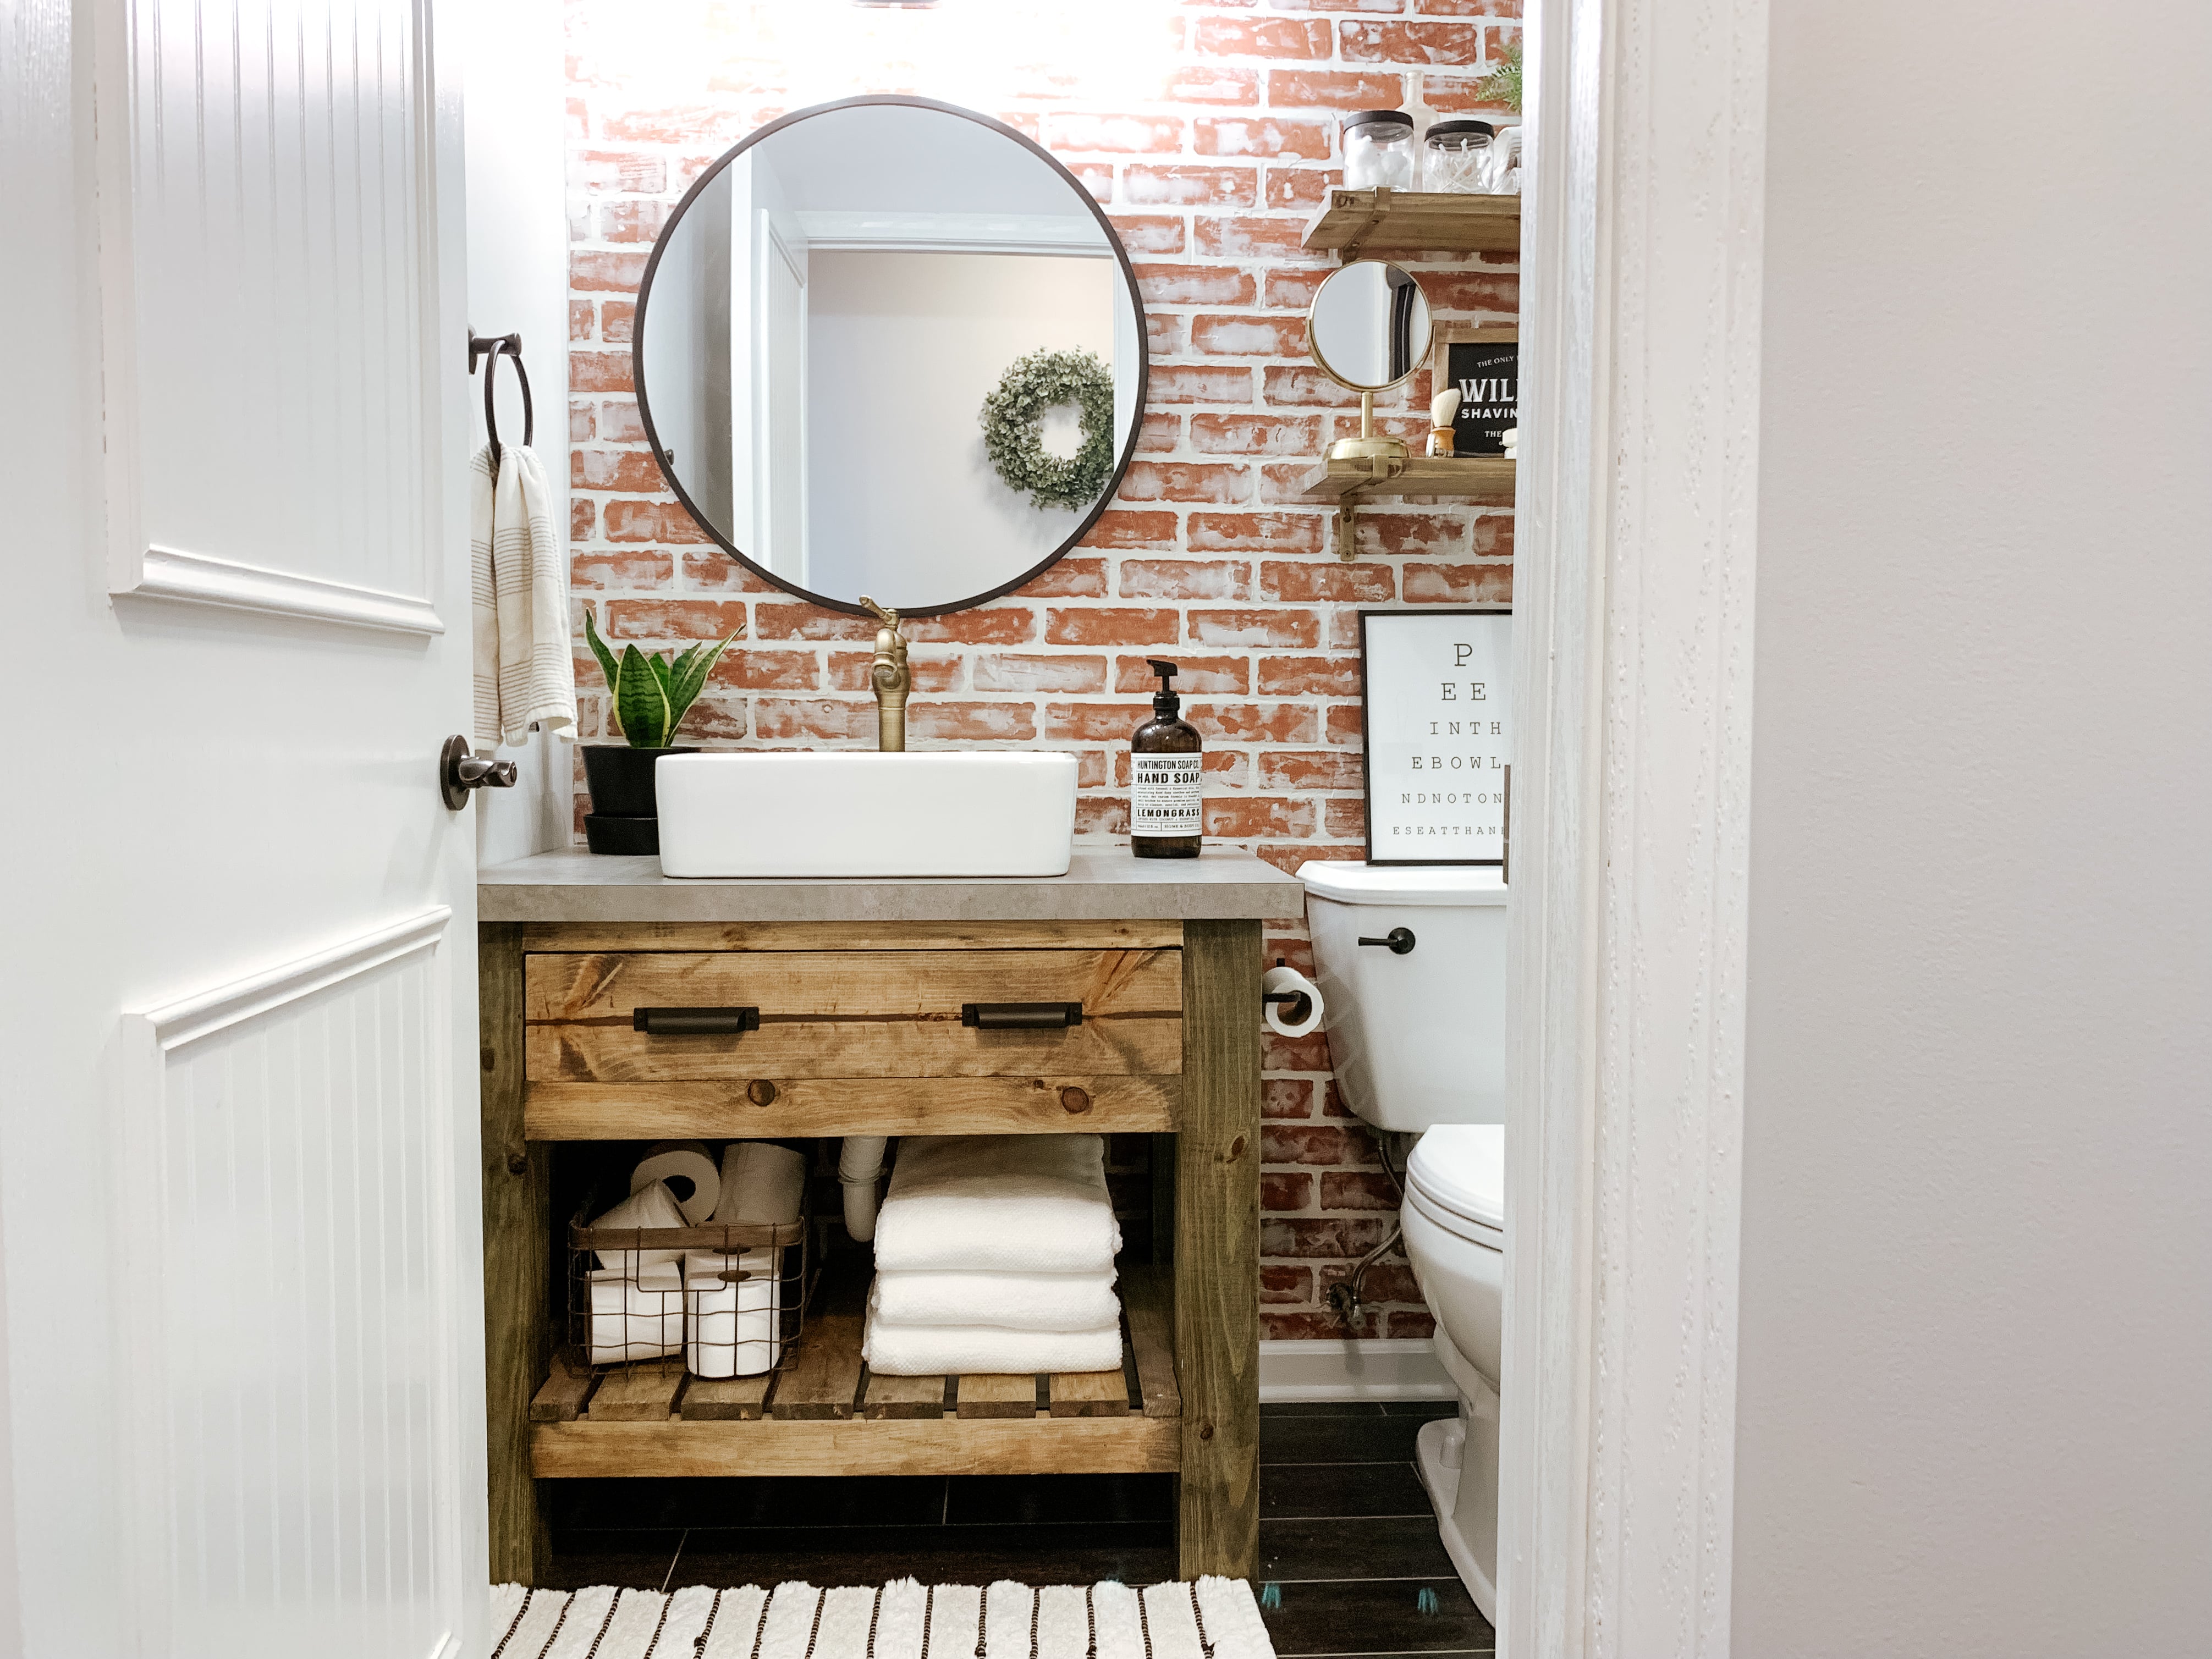 Diy Rustic Bathroom Vanity Sammy On State, Building Bathroom Vanity With Drawers